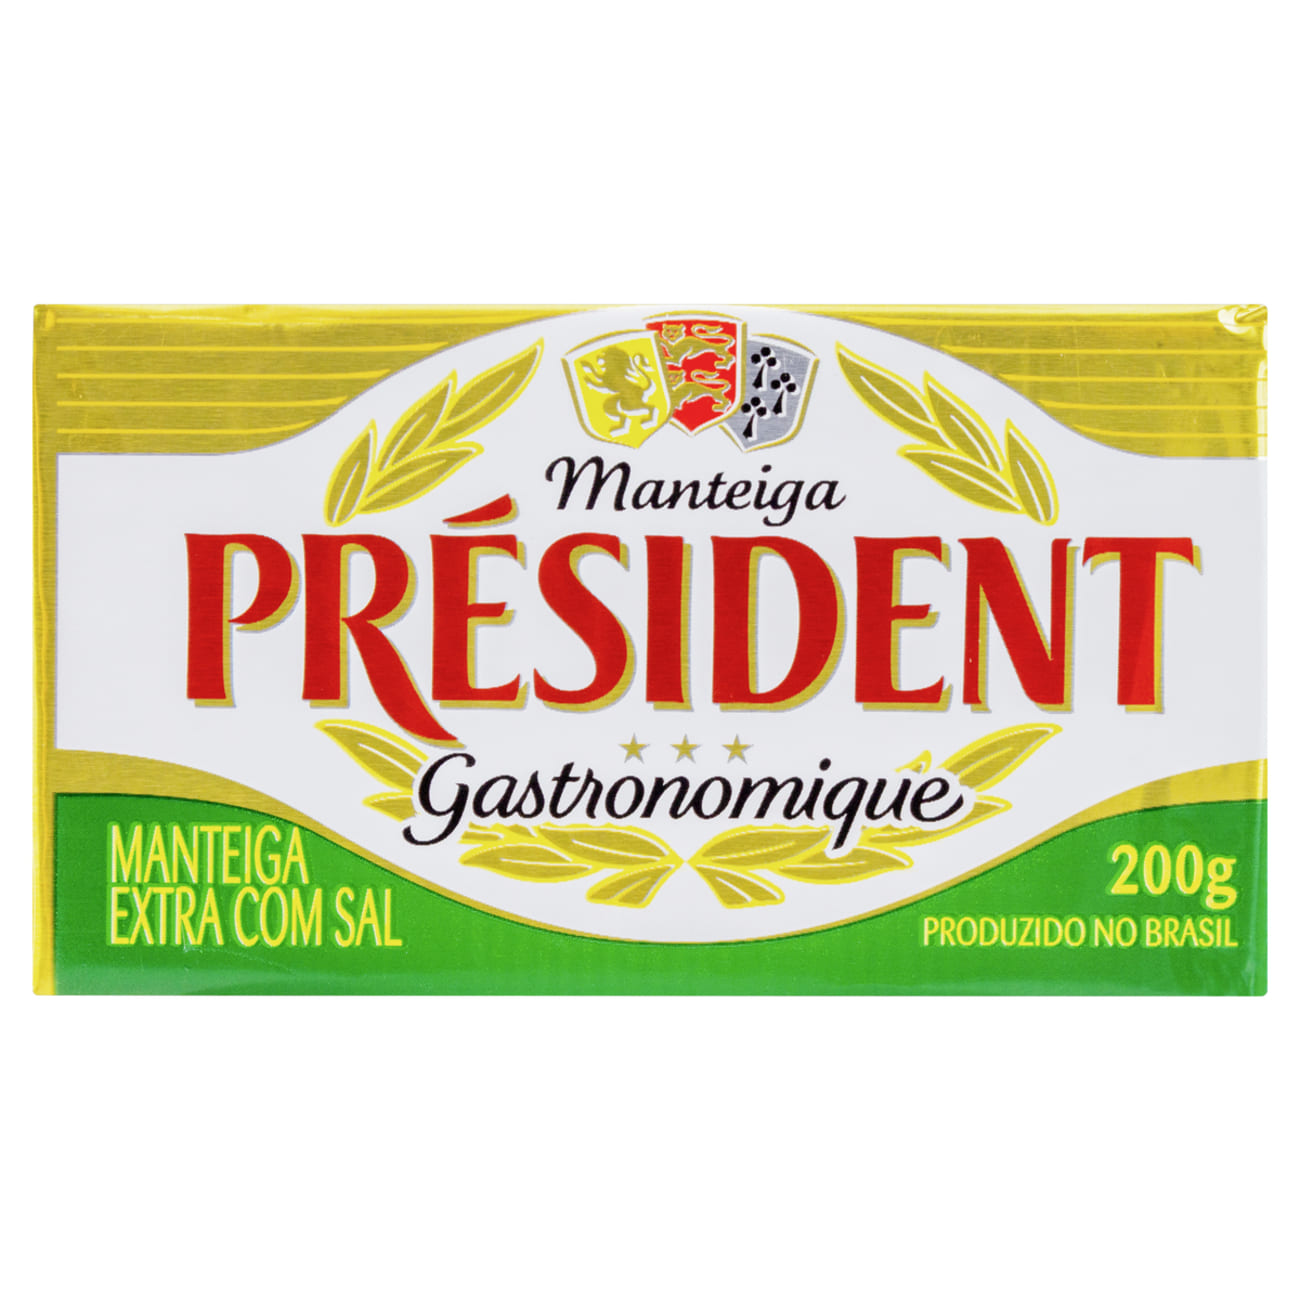 Manteiga Extra com Sal Prsident Gastronomique 200g